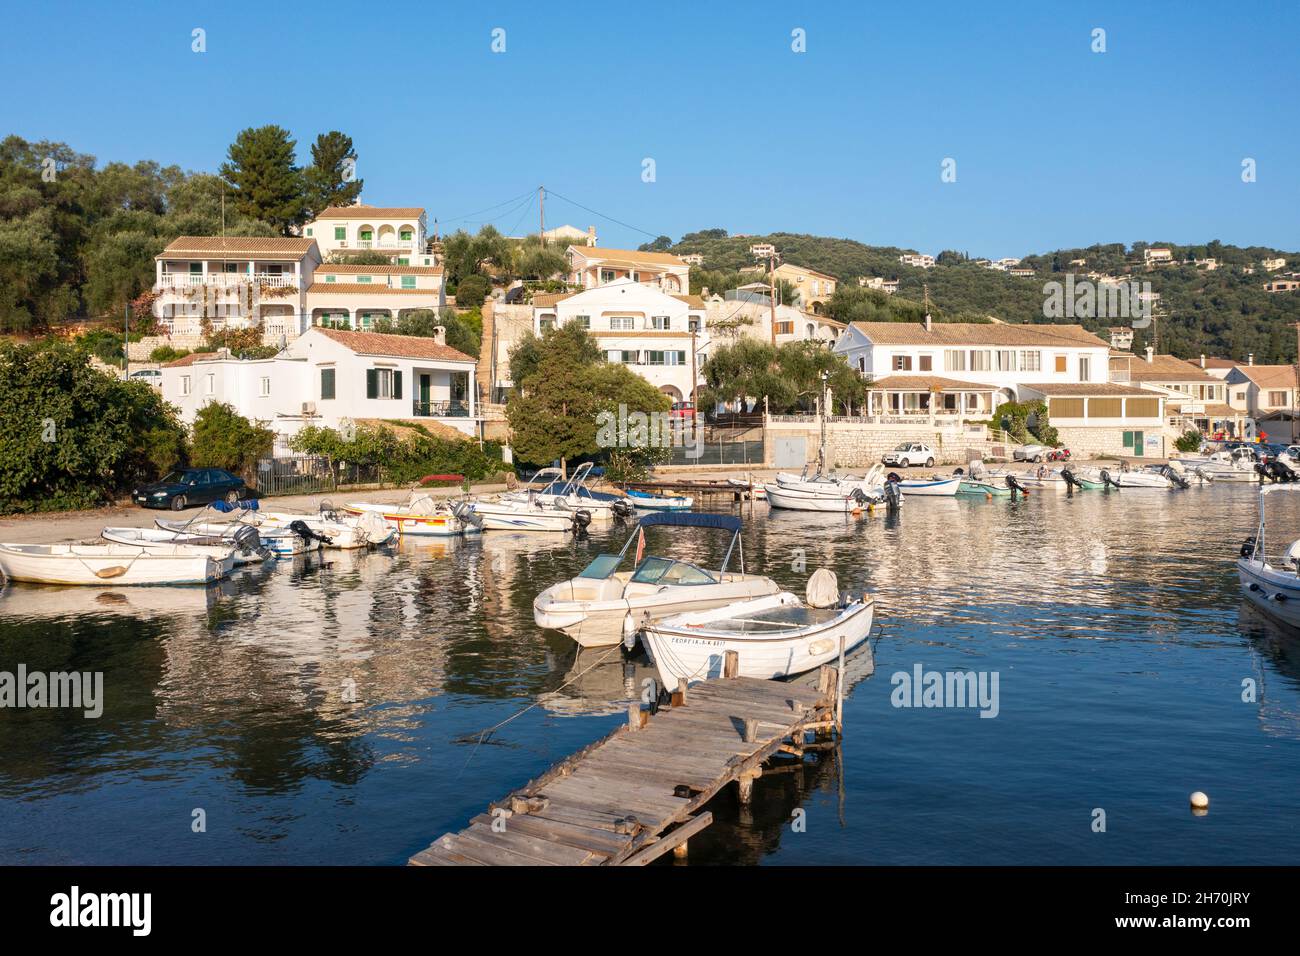 Vista aérea de Agios Stefanos - un pueblo de pescadores frente al mar, y popular destino turístico, en la costa noreste de Corfú, Islas Jónicas, Grecia Foto de stock